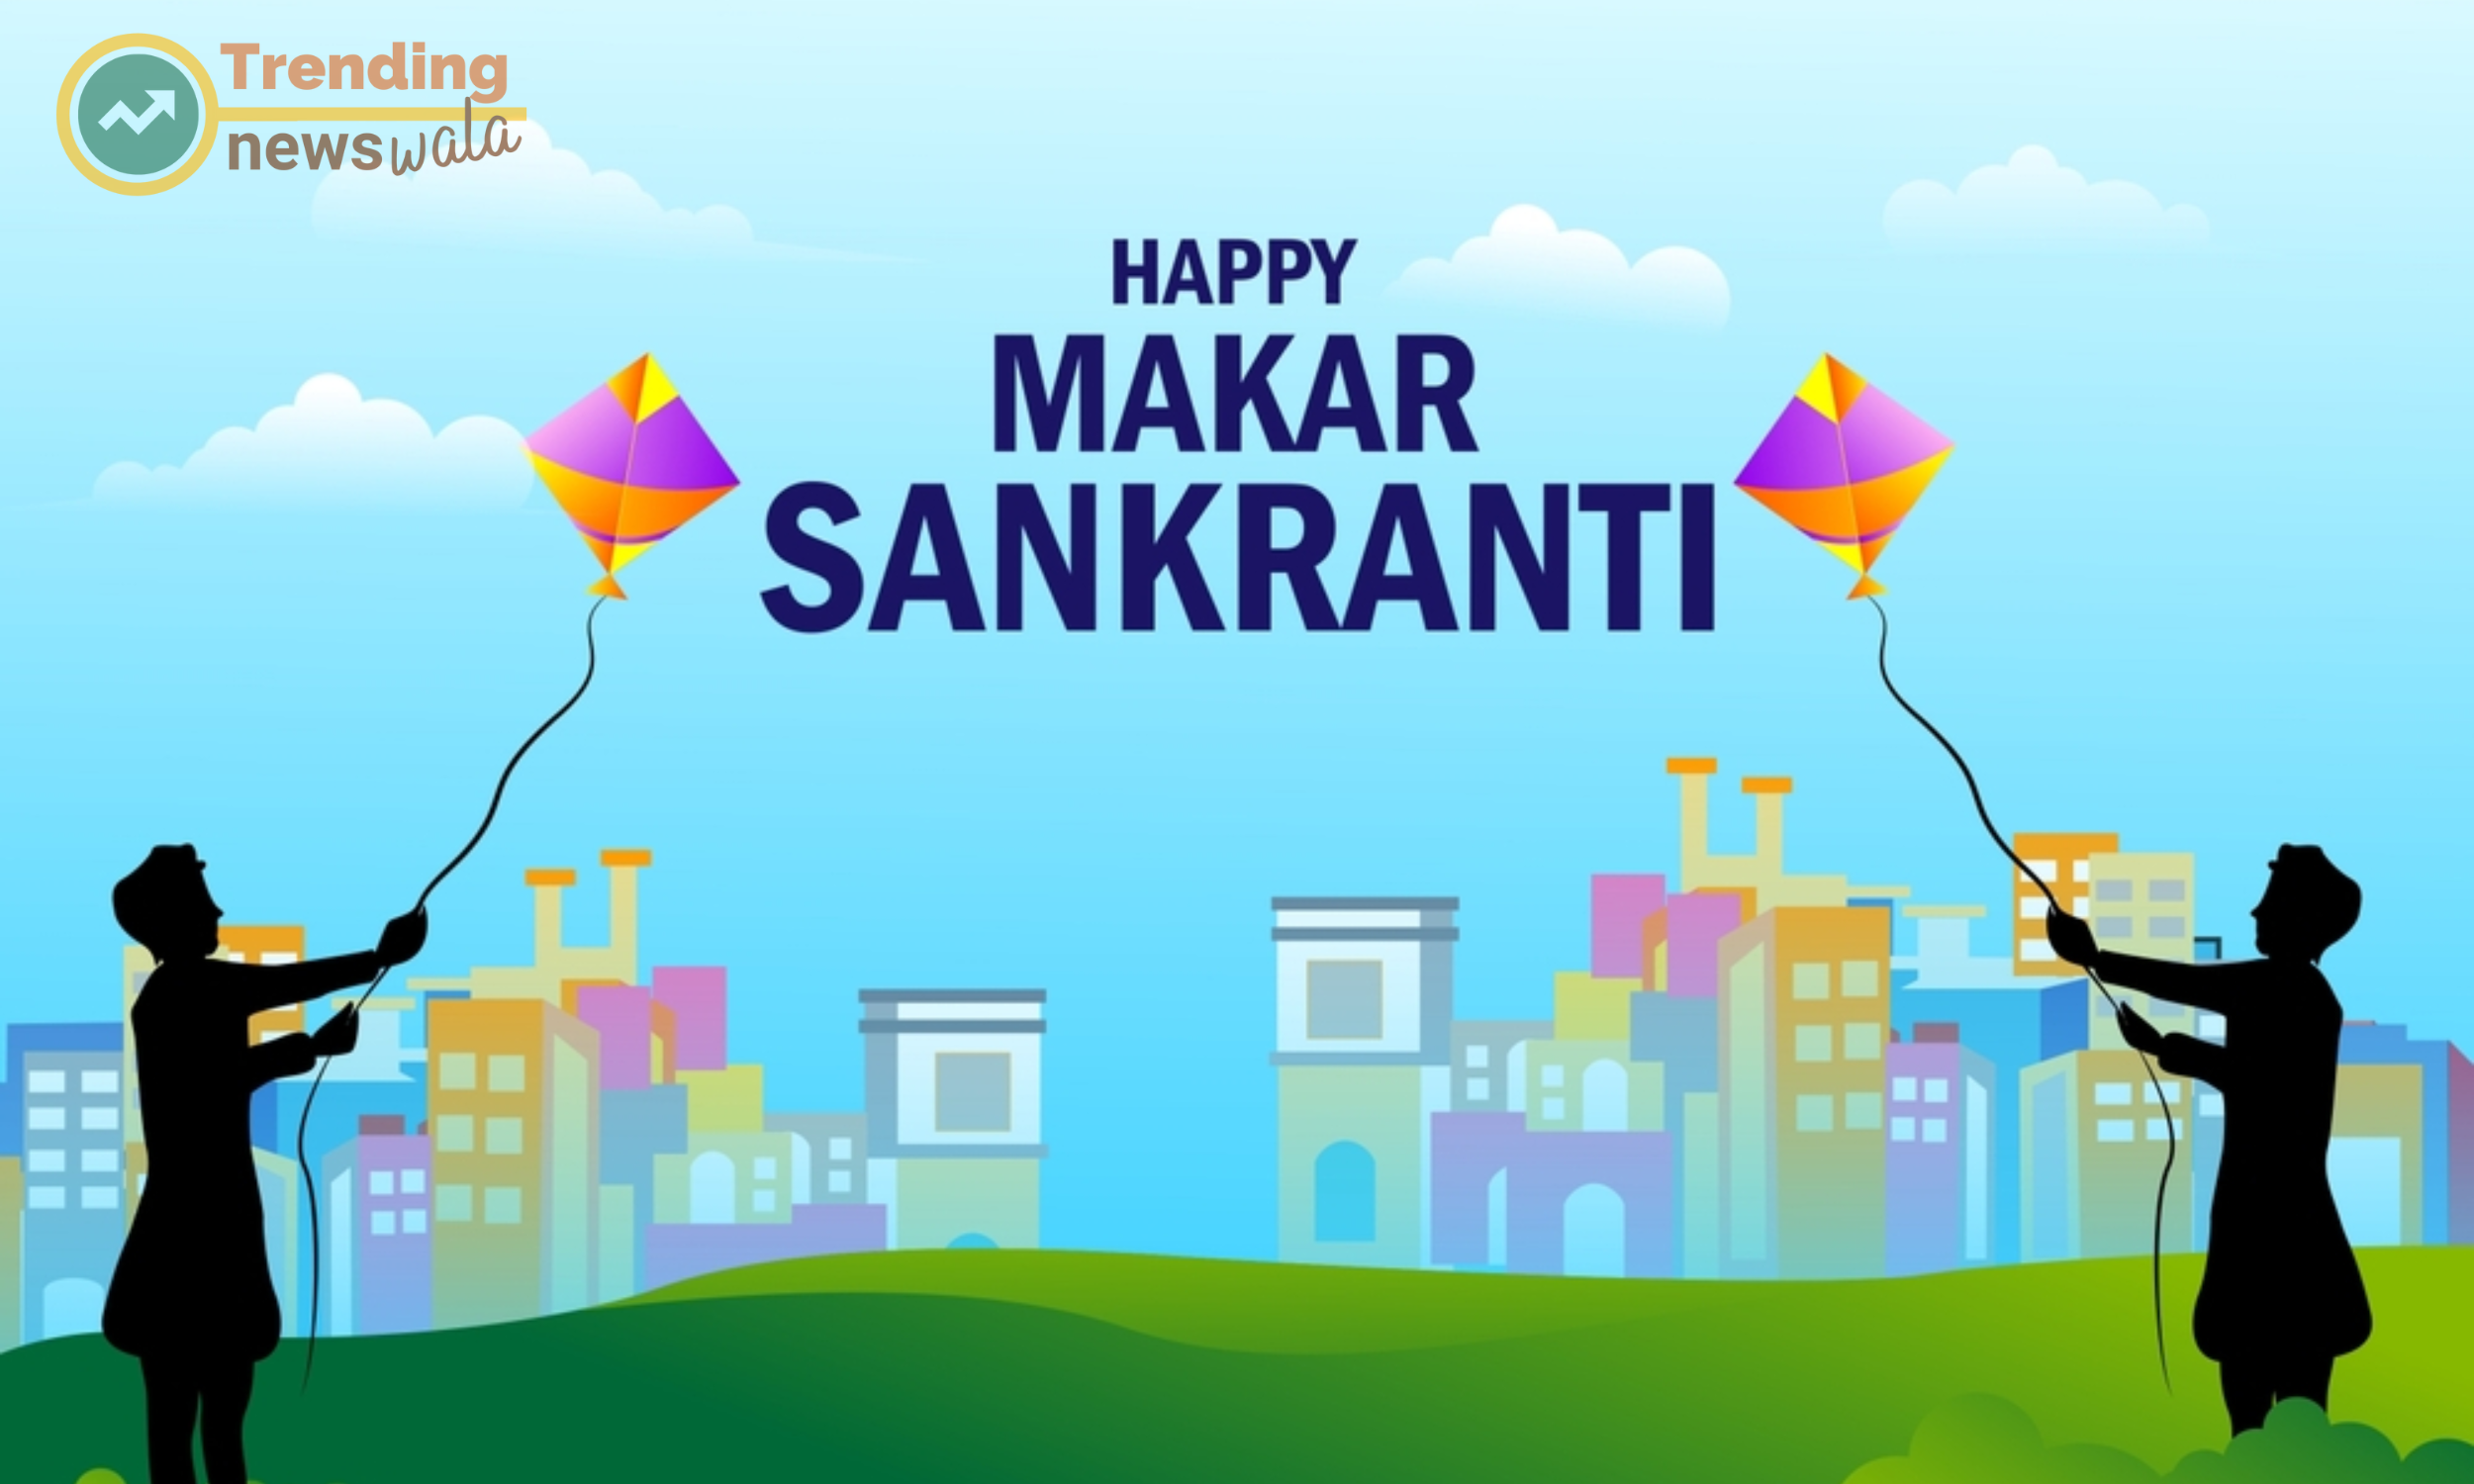 Happy Makar Sankranti , Makar Sankranti is kite flying